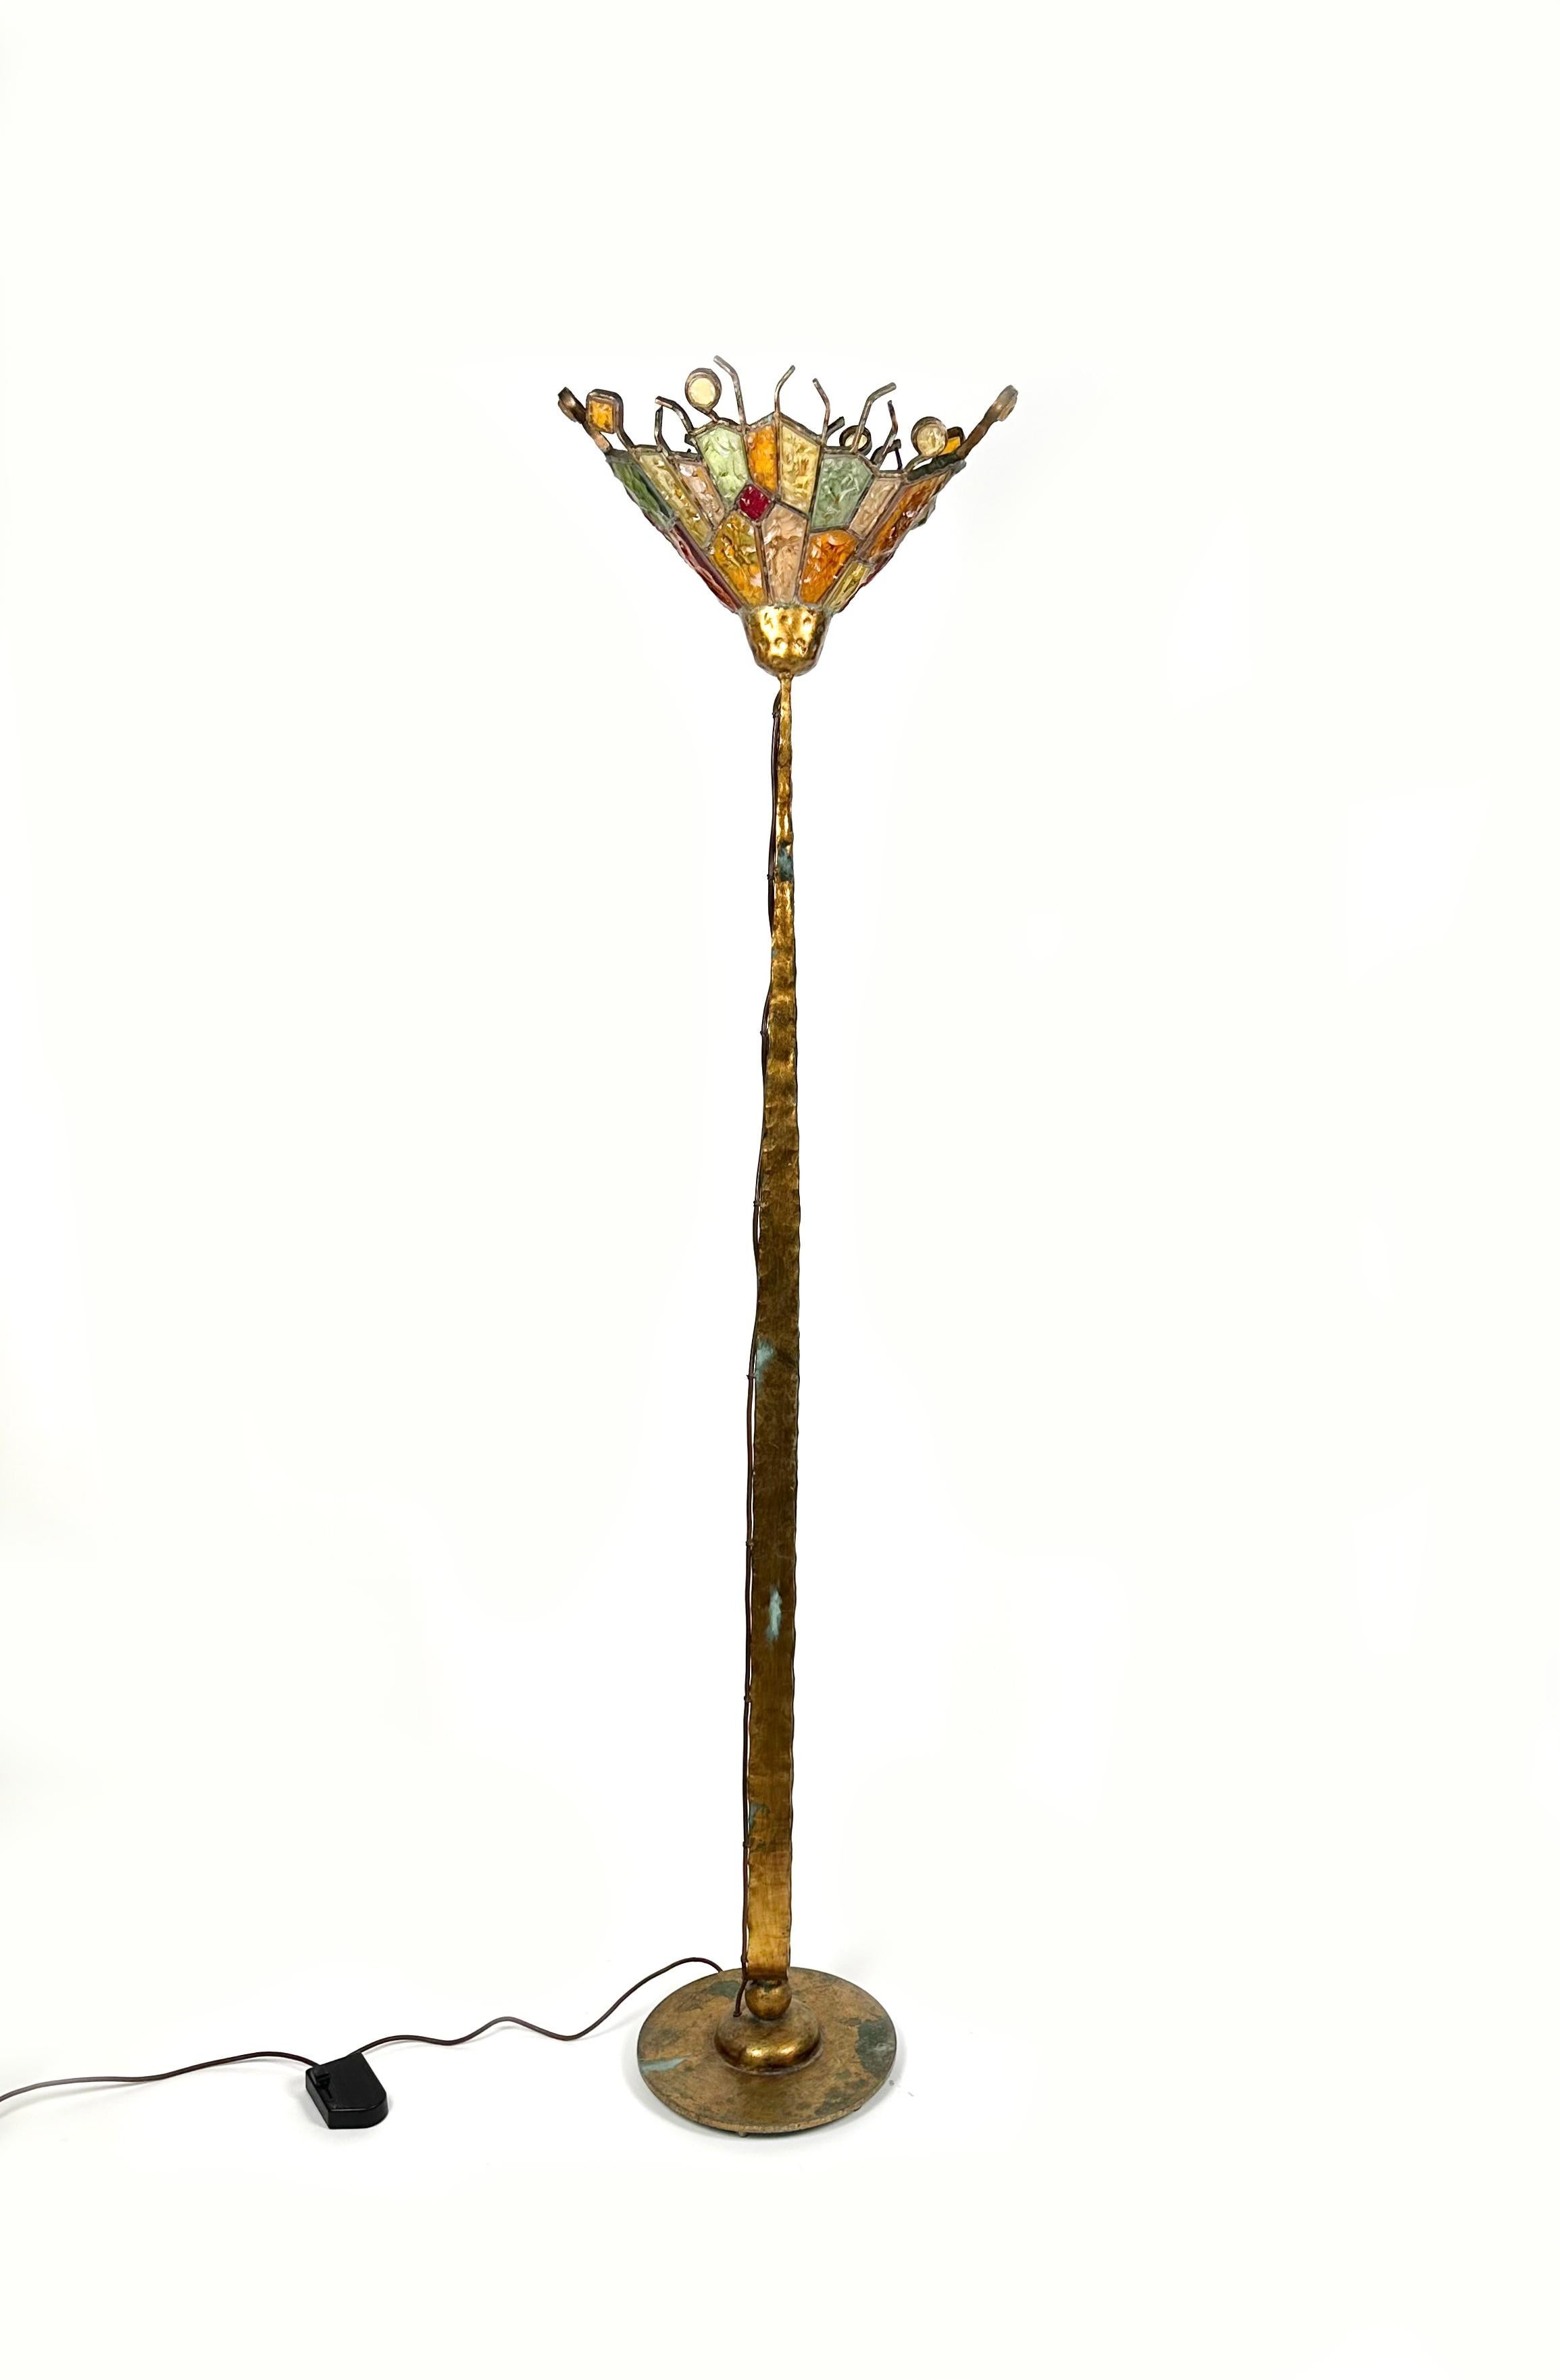 Erstaunliche Stehleuchte aus goldenem Eisen und buntem Kunstglas von Albano Poli für Poliarte.

Hergestellt in Italien in den 1970er Jahren.

Poliarte wurde 1953 von dem Künstler Albano Poli gegründet, der zunächst außergewöhnliche Glasmalereien